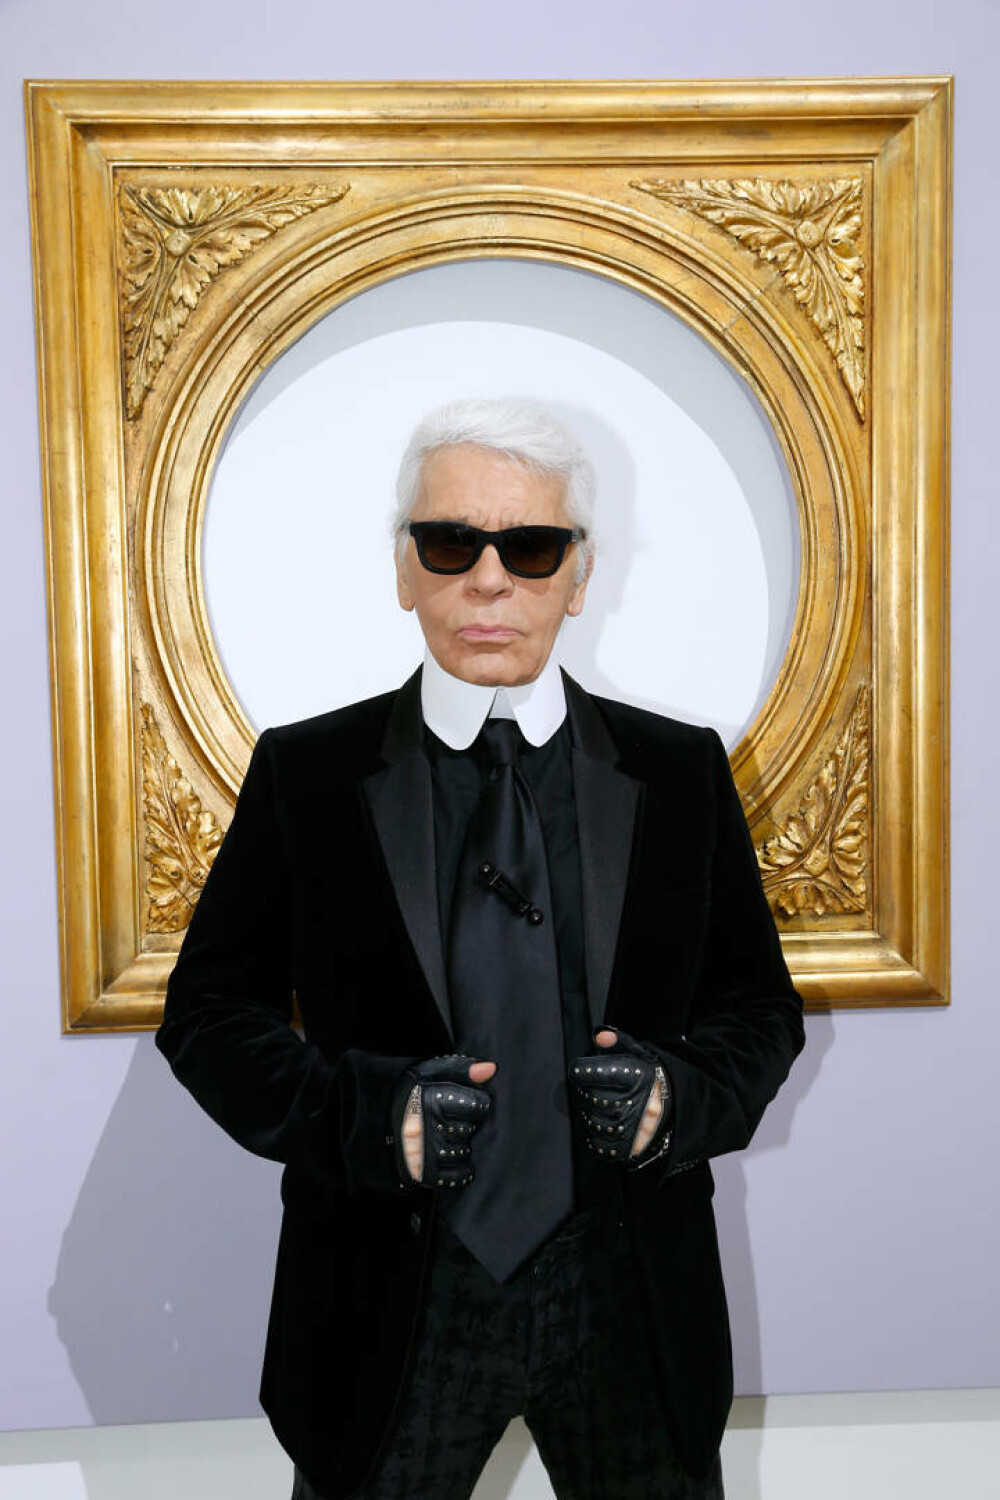 Imagini de colecție cu Karl Lagerfeld. Renumitul creator de modă ar fi împlinit 90 de ani | GALERIE FOTO - Imaginea 13